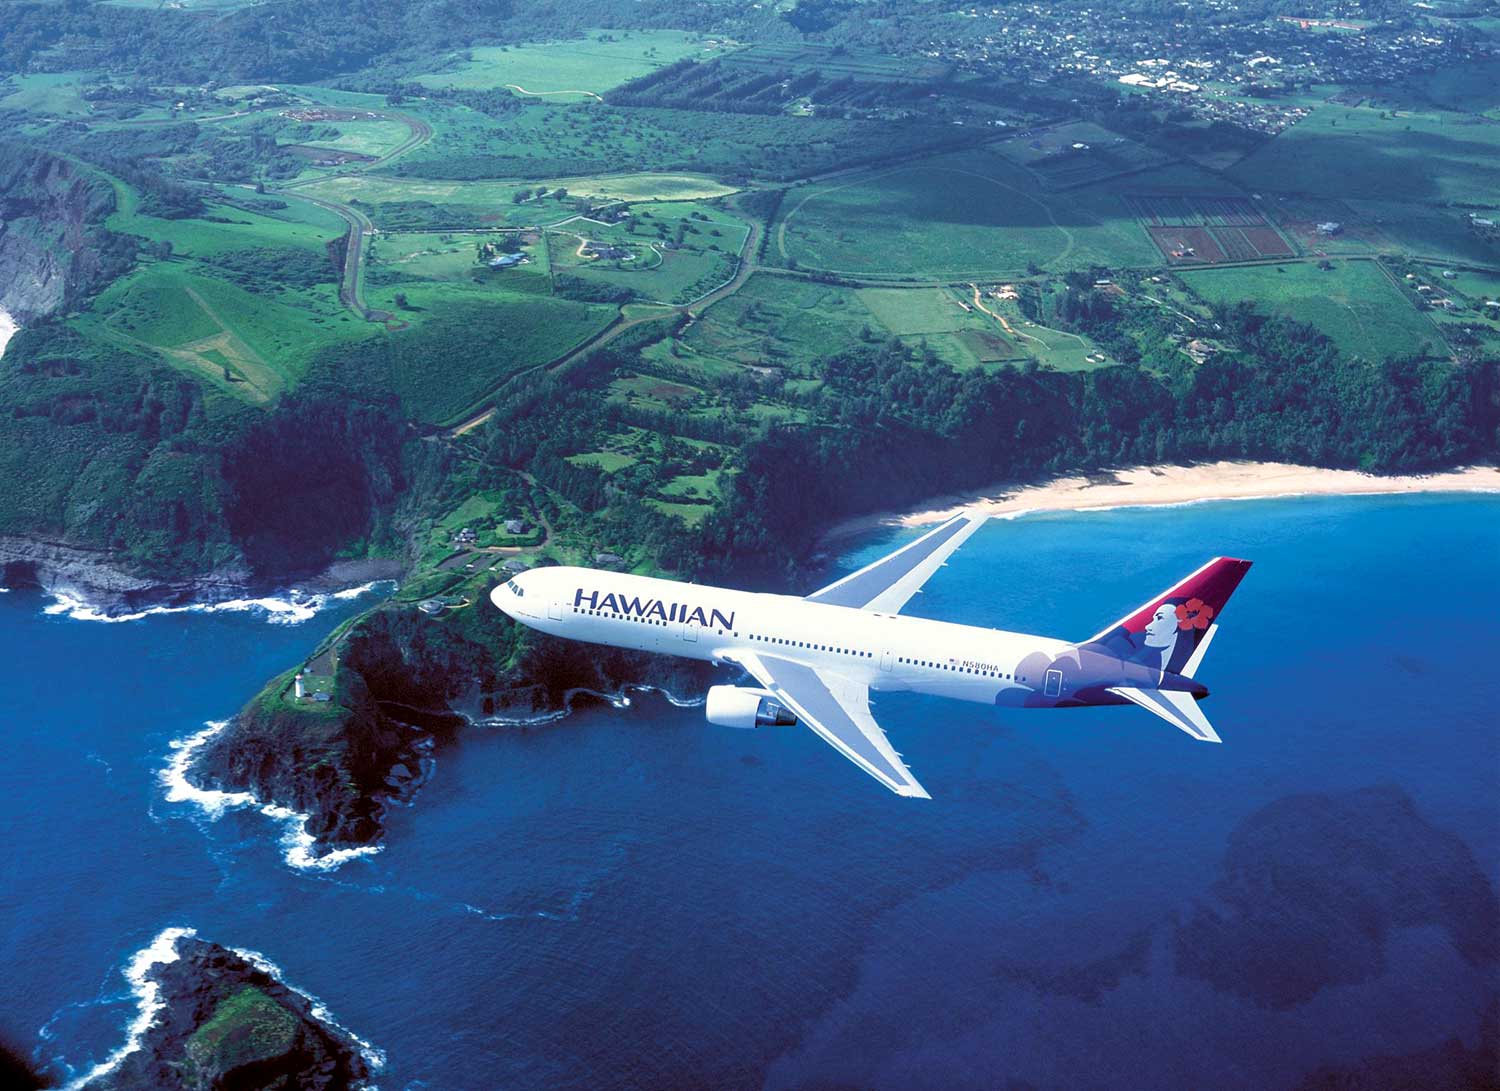 Hawaii Travel Deals: 10% Off All Flights Between Hawaii